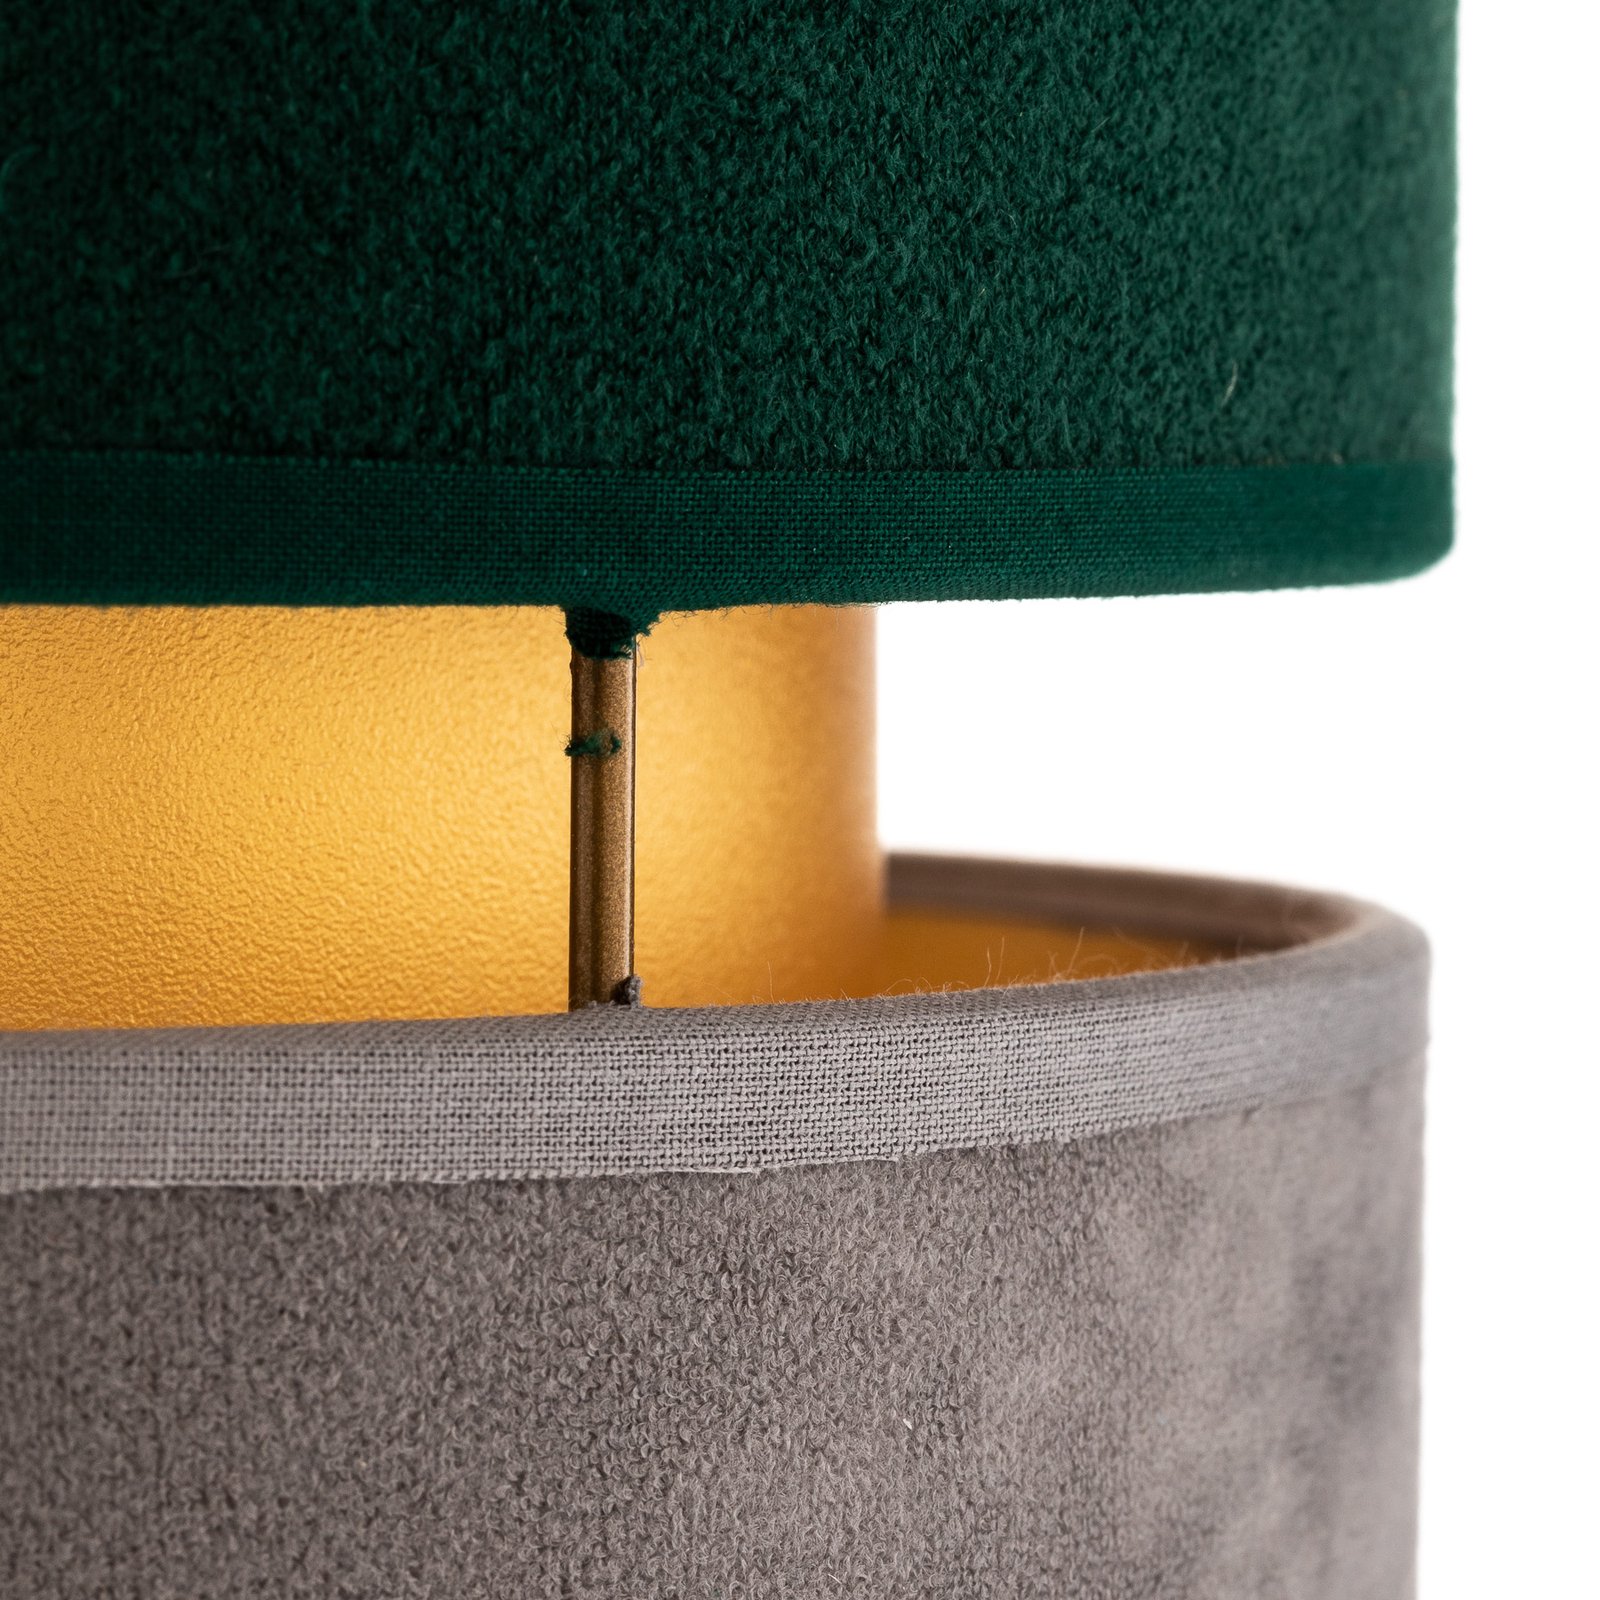 Lampa stołowa Golden Duo szara/zielona/złota 30cm